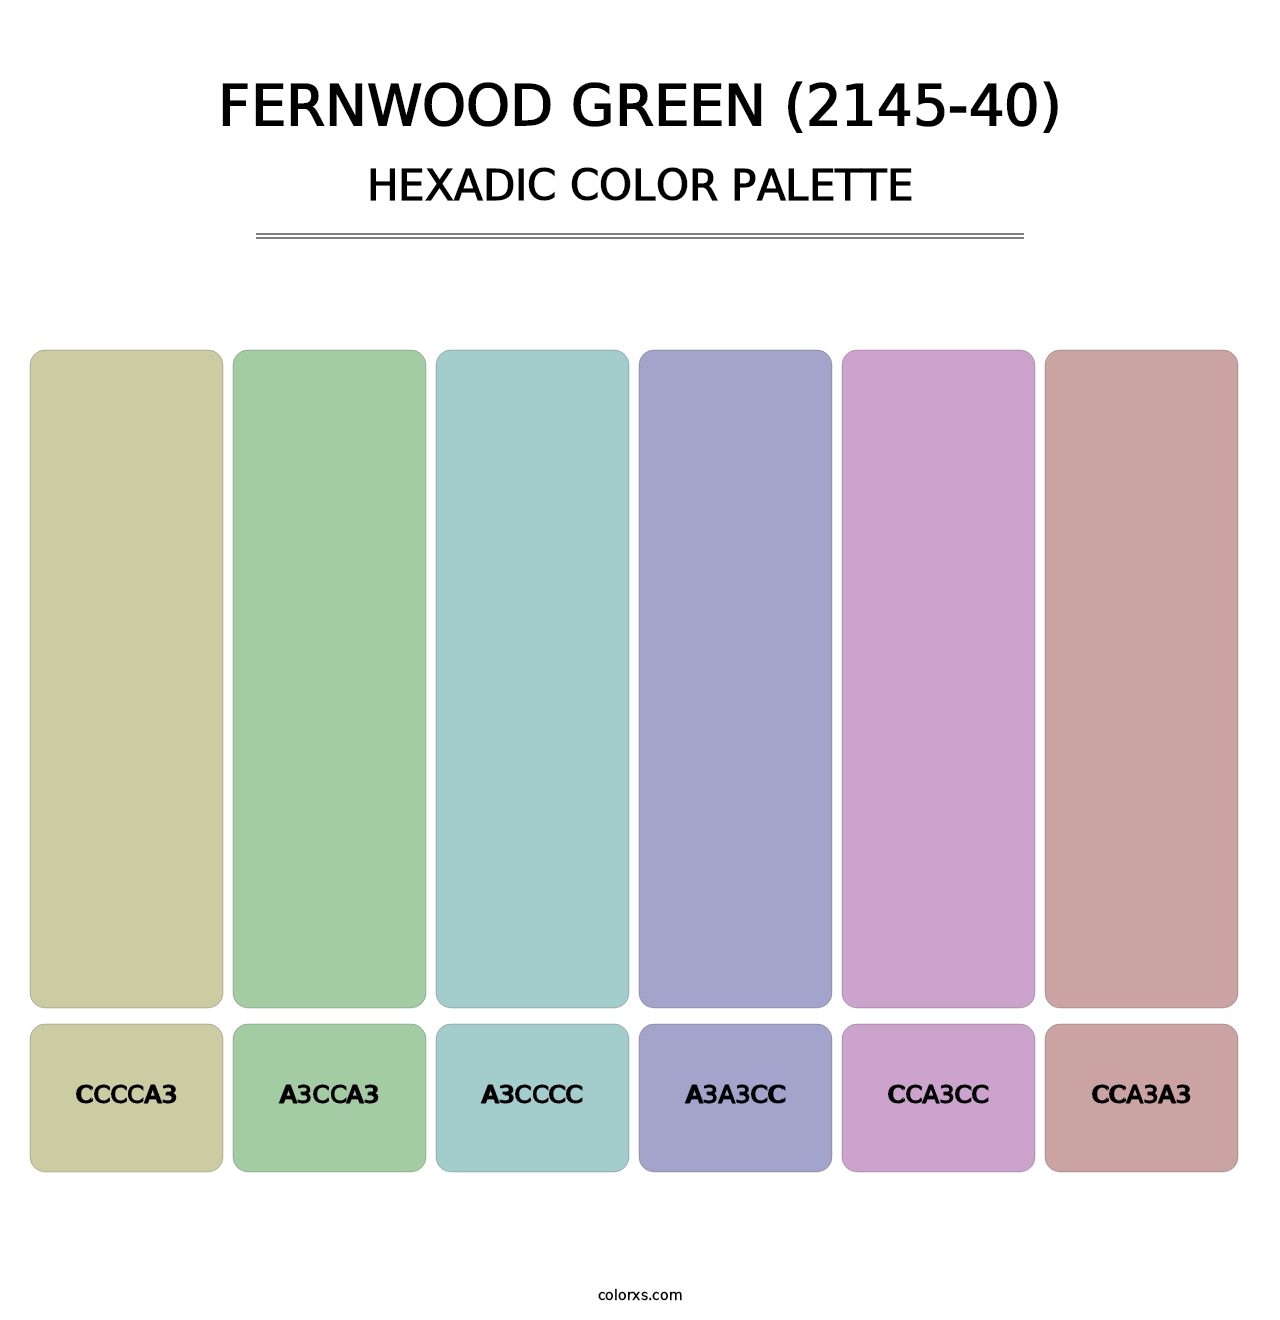 Fernwood Green (2145-40) - Hexadic Color Palette